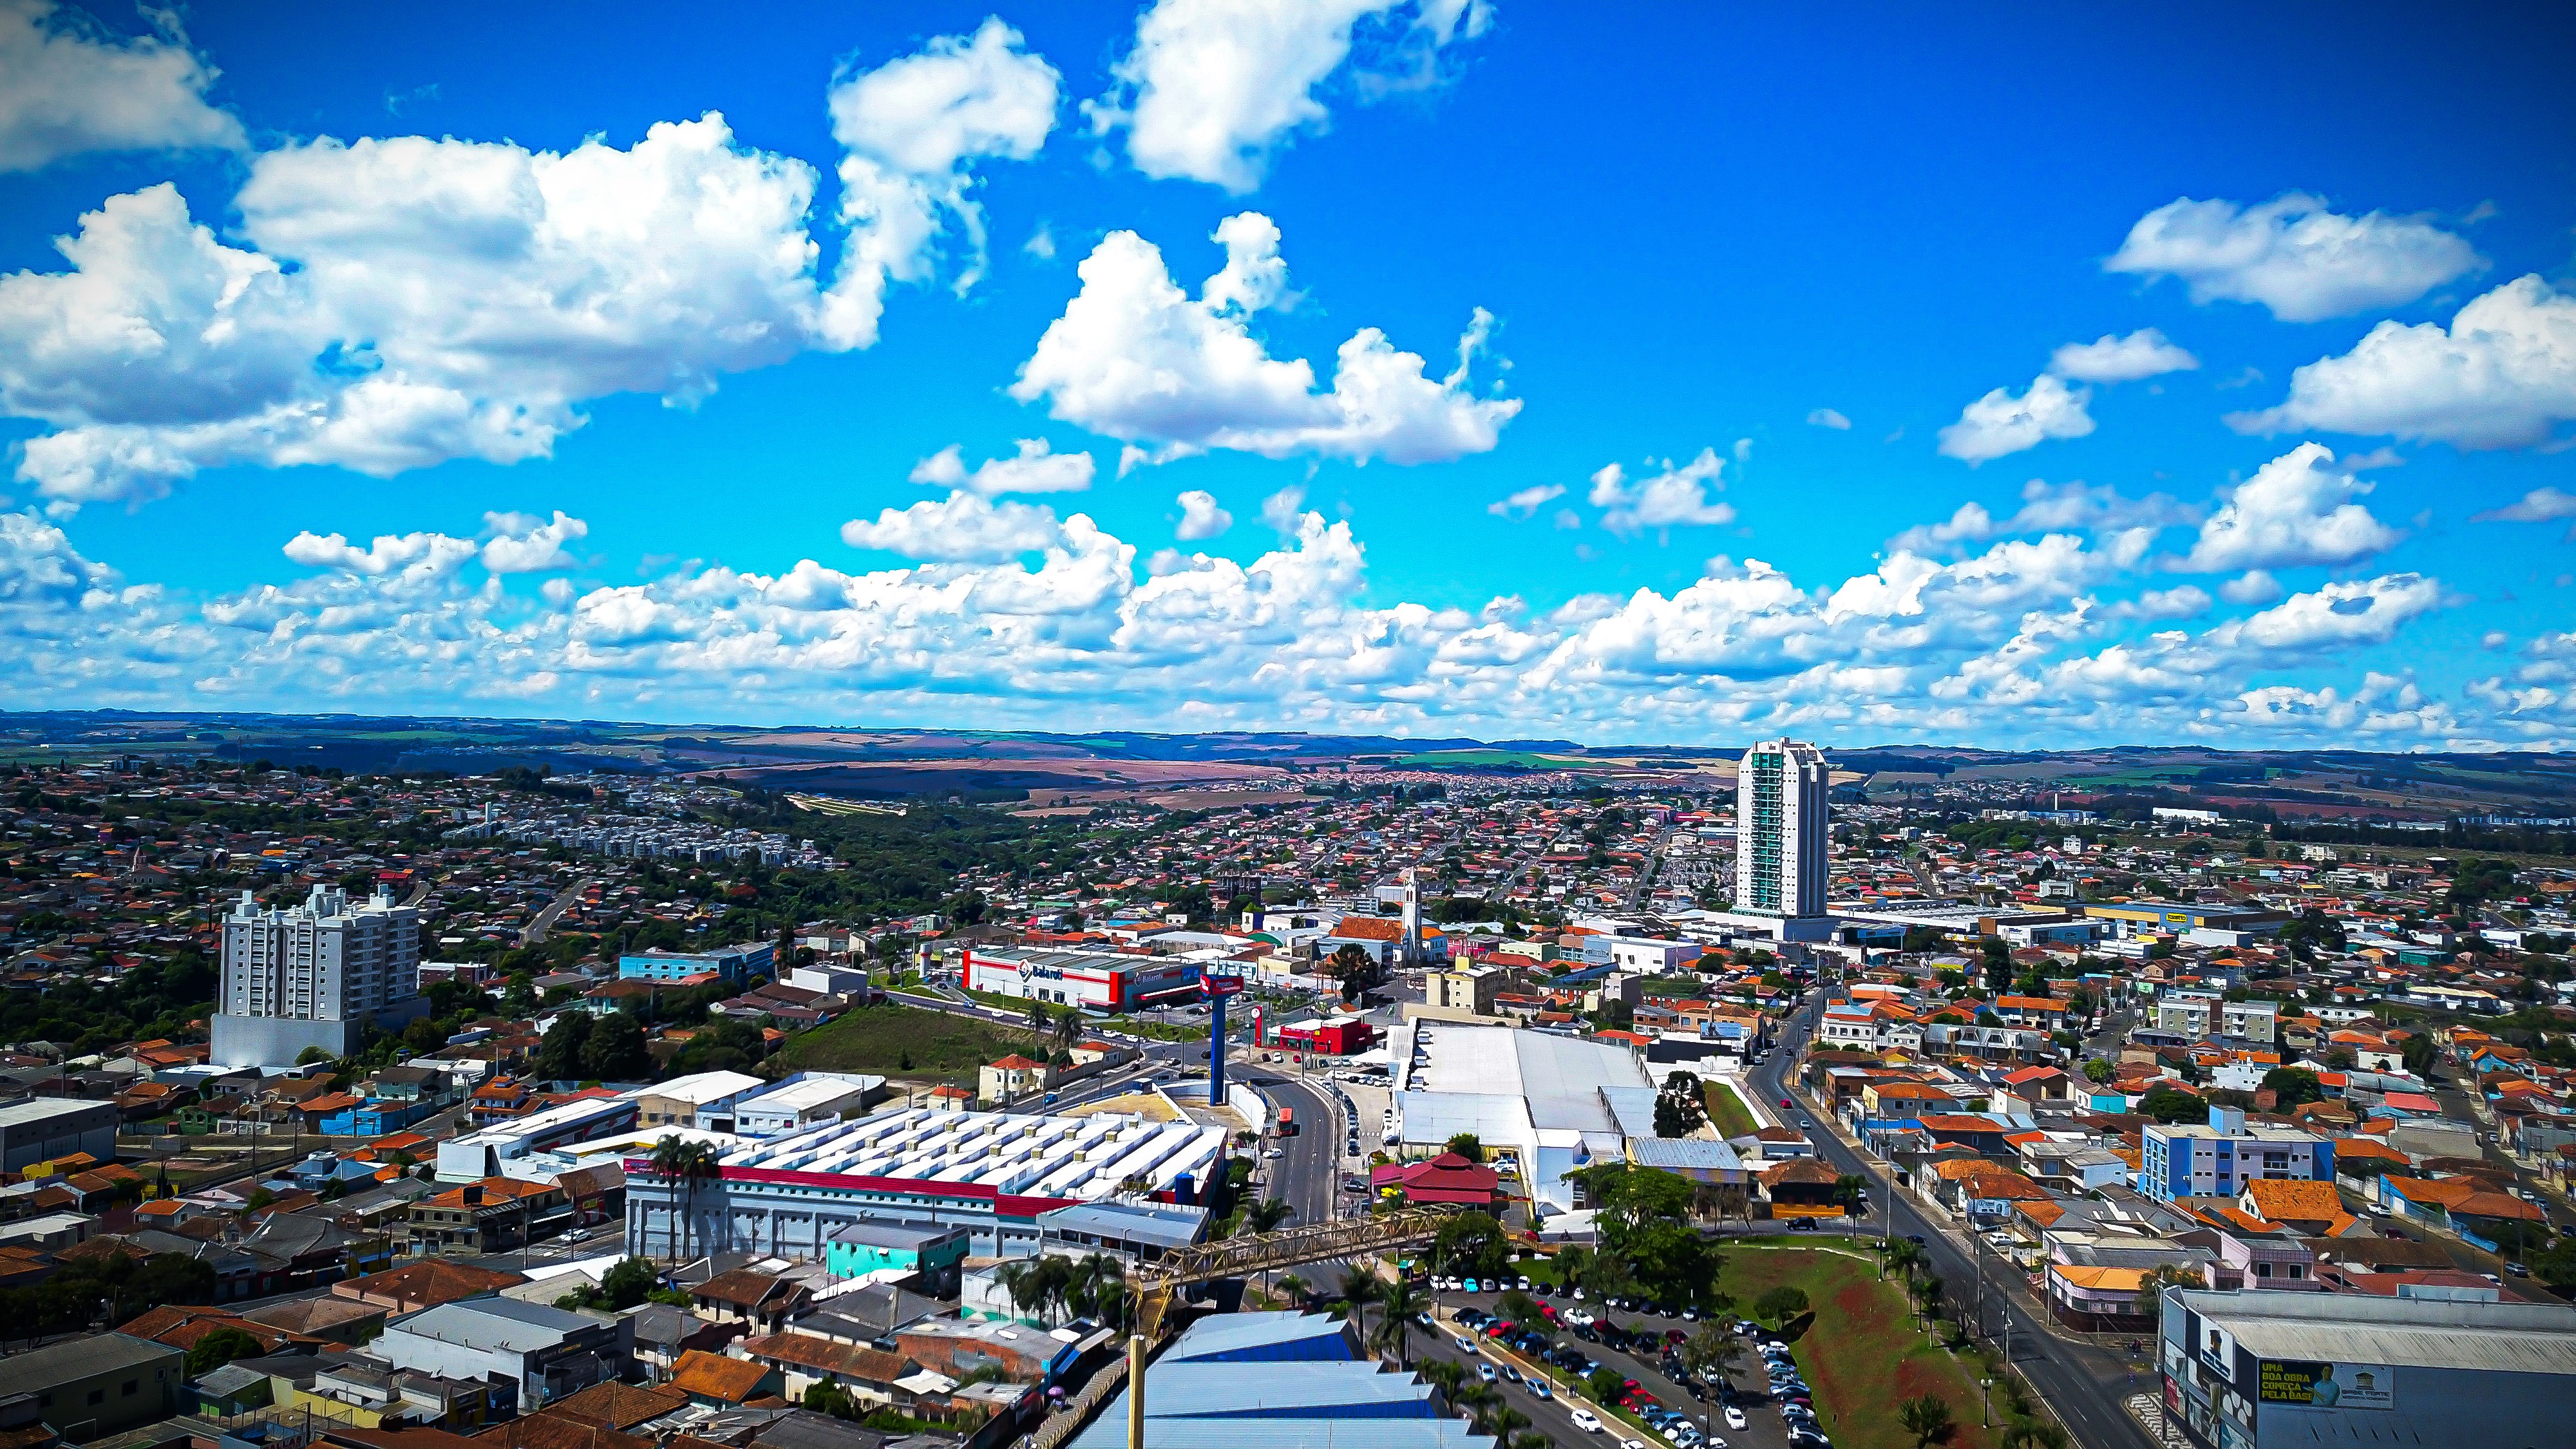 Vista aérea do município de Ponta Grossa, região de Uvaranas